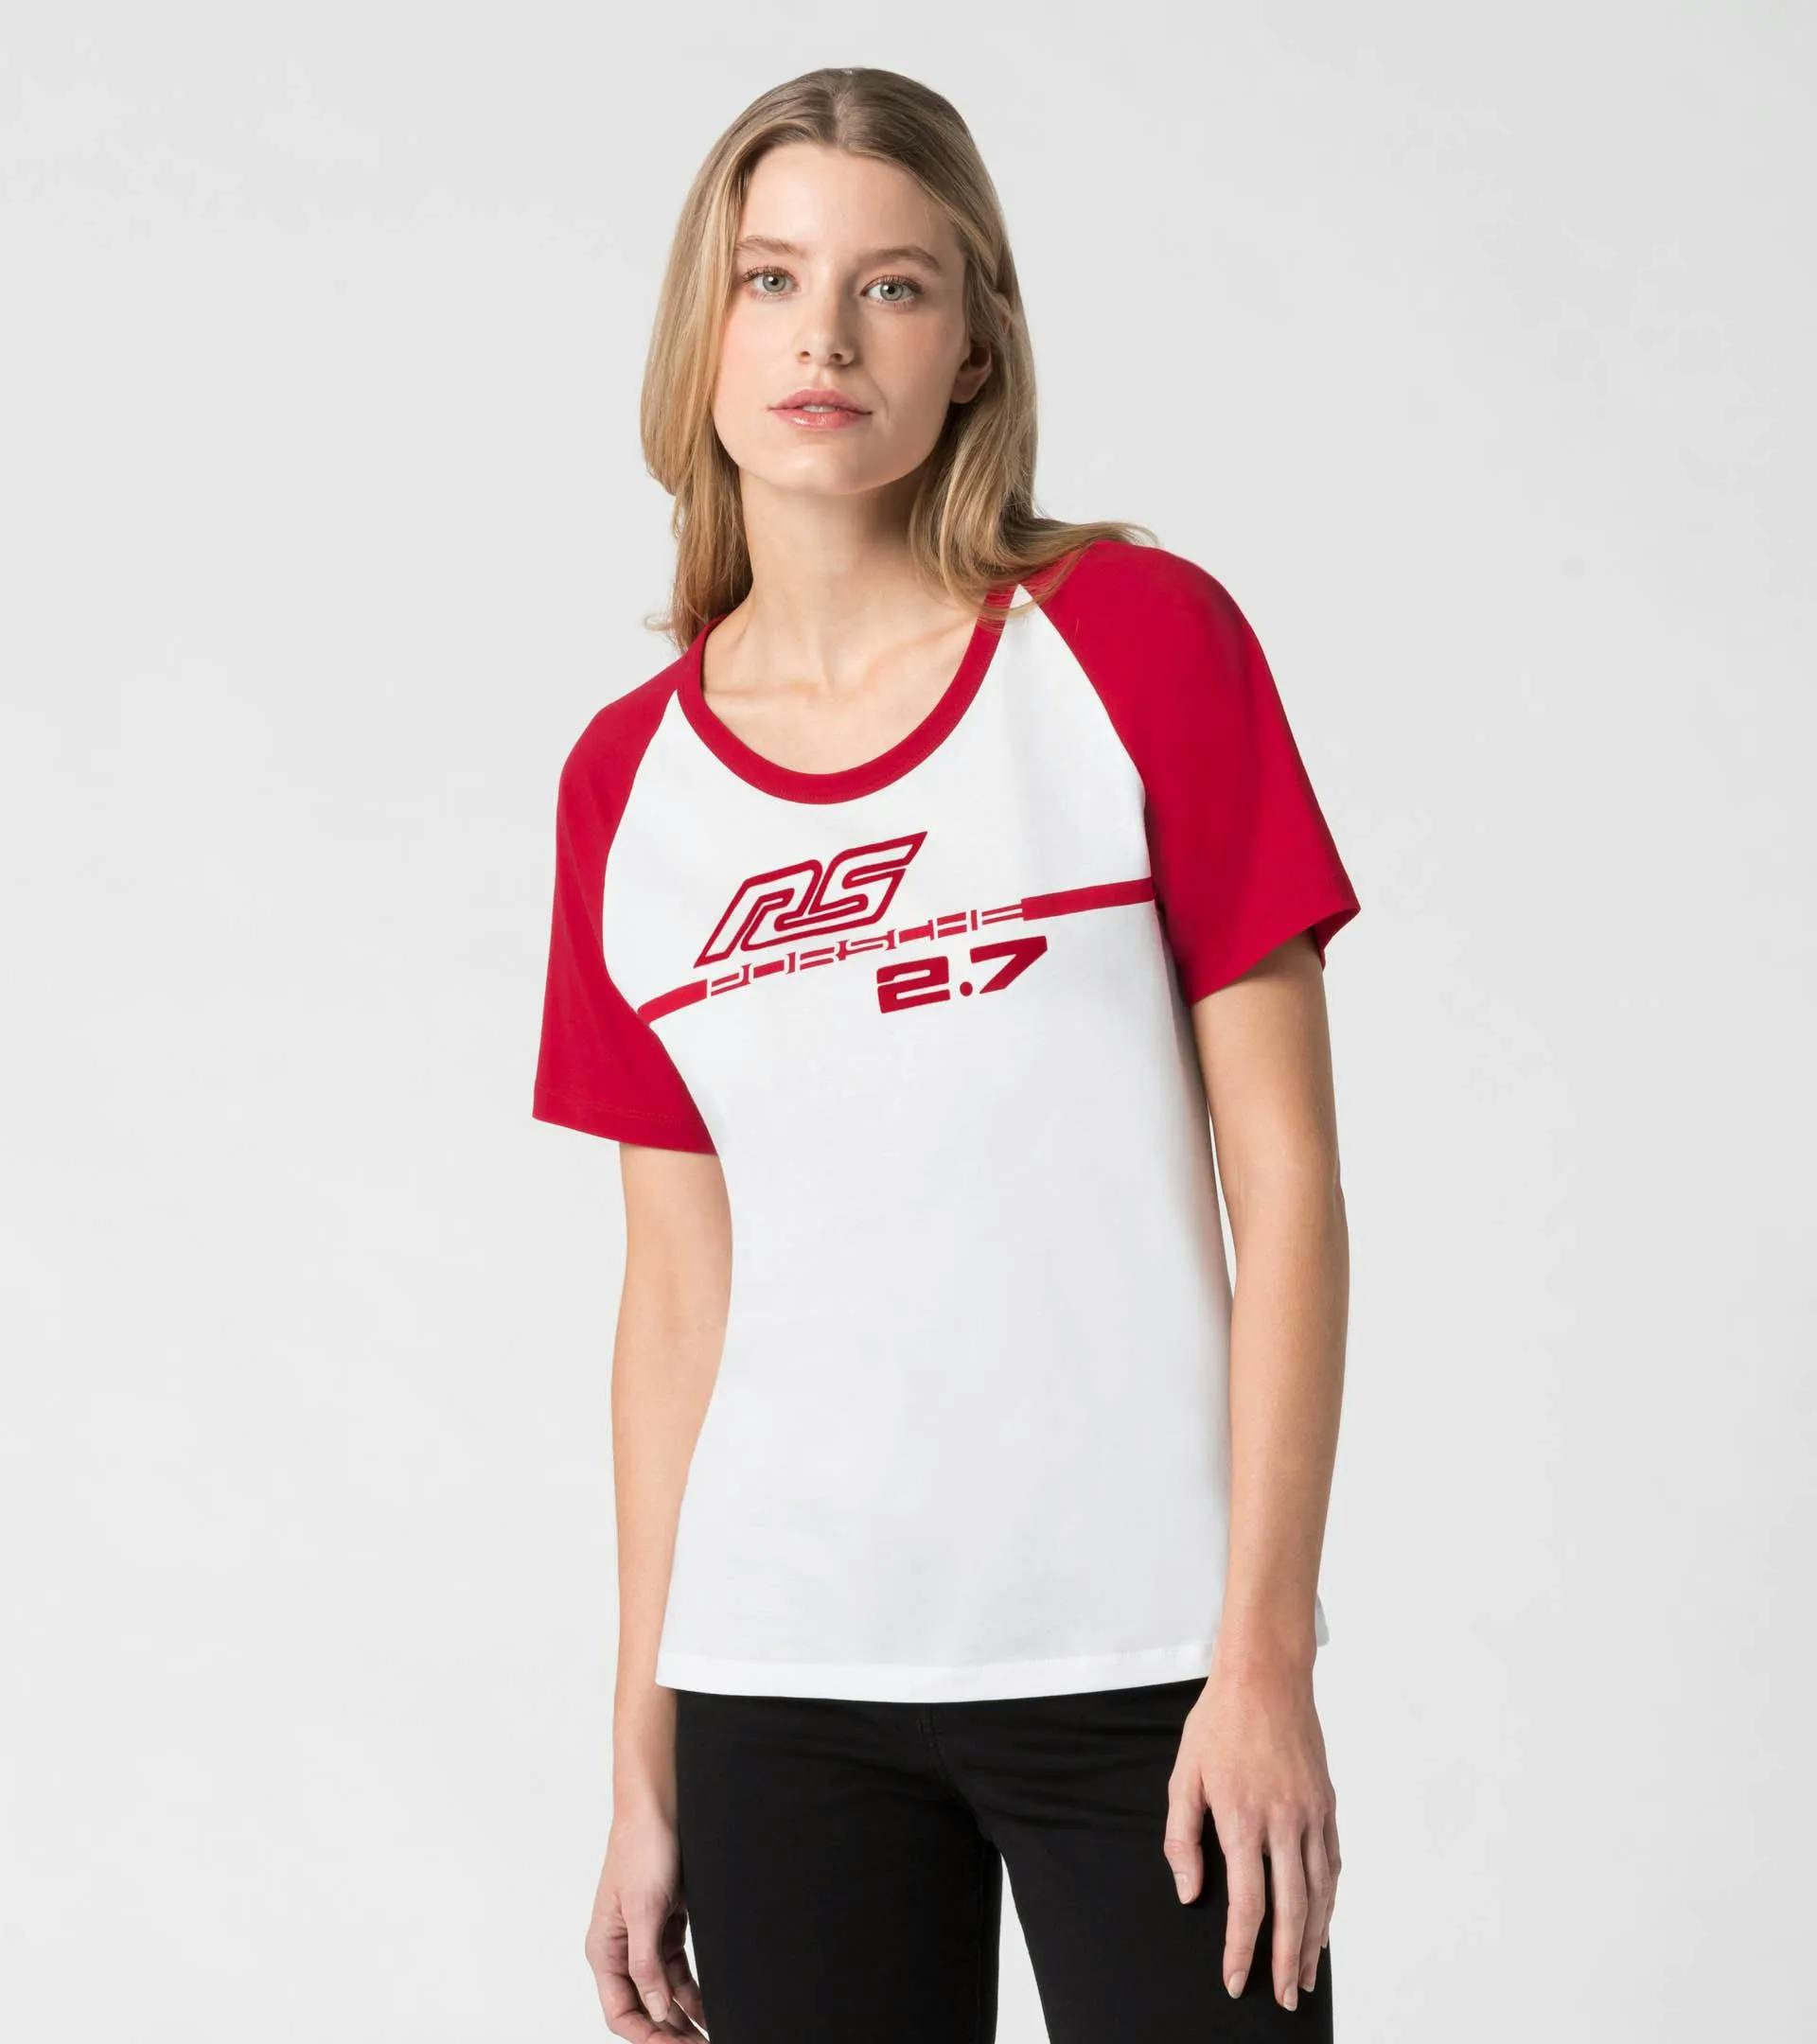 T-shirt da donna – RS 2.7 5